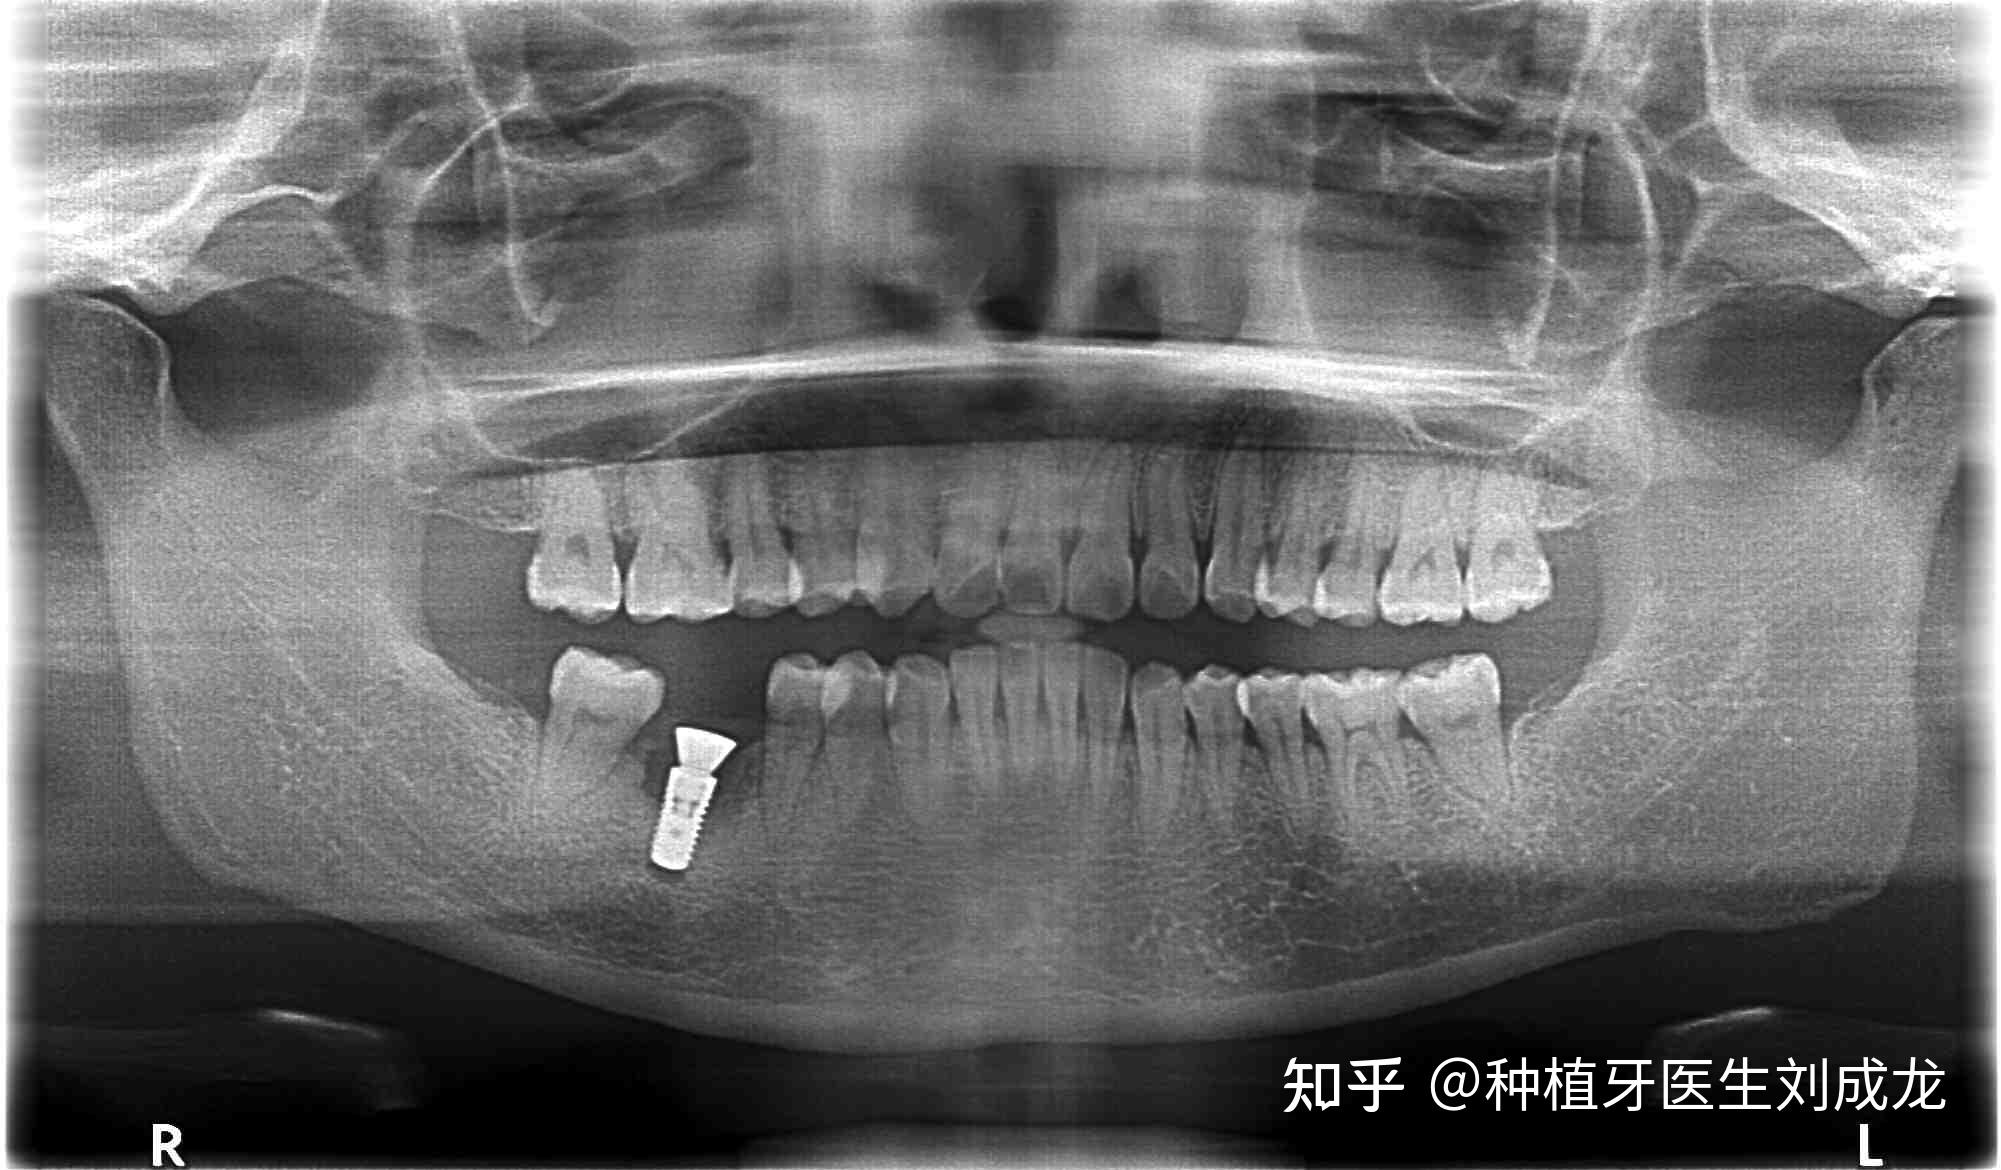 郑州瑞士iti种植牙医生刘成龙41岁女士磨牙区单颗种植案例